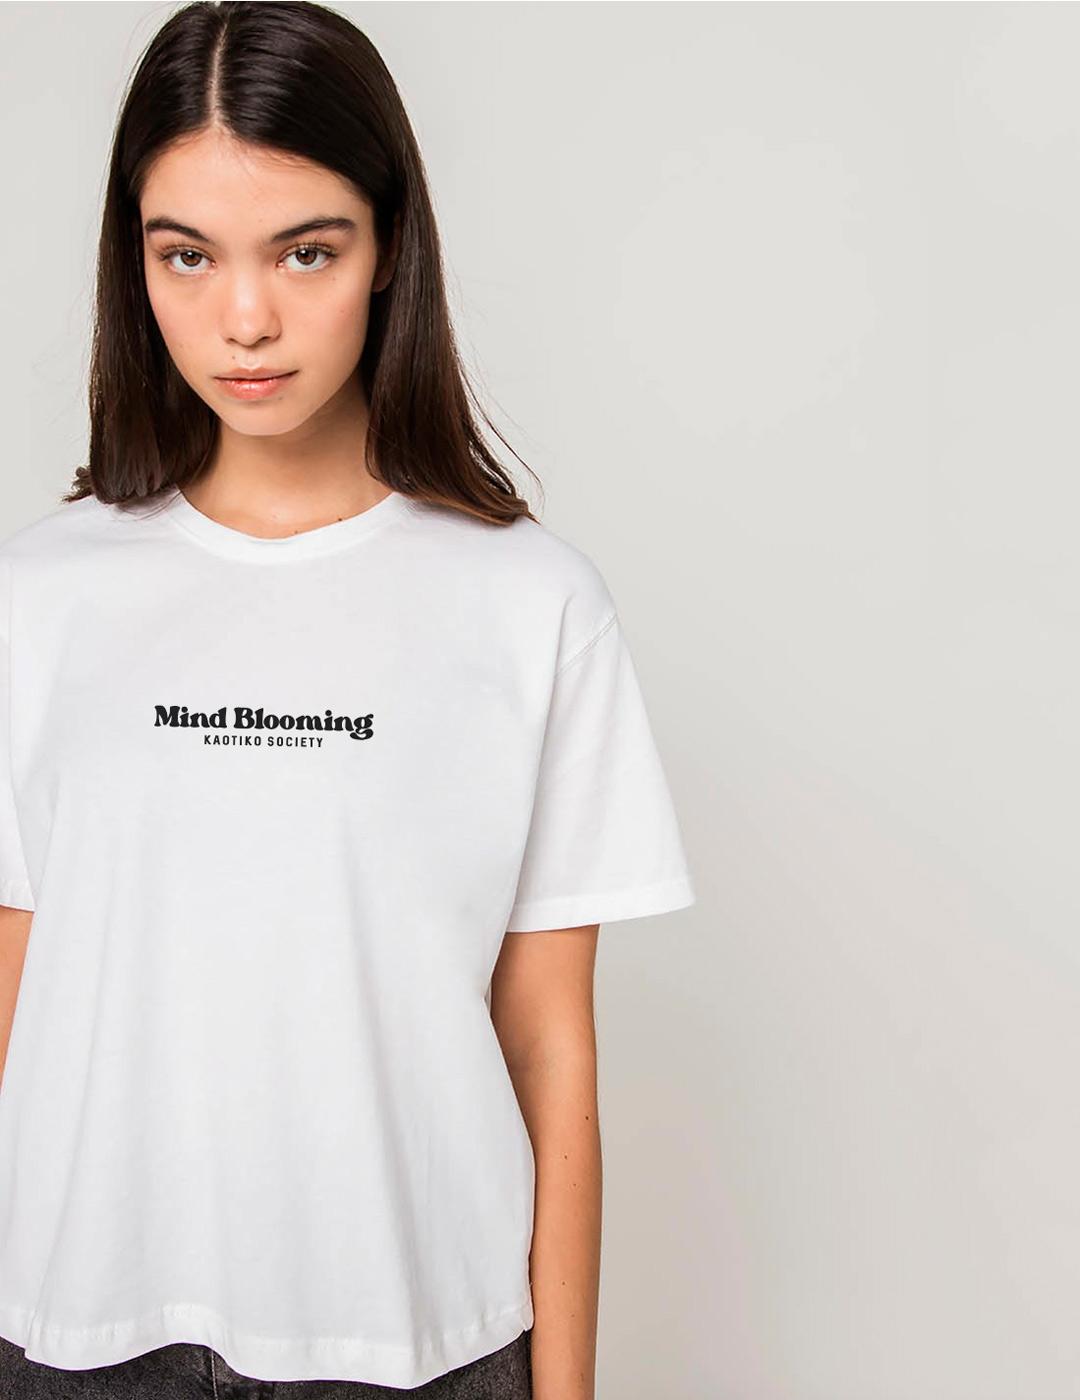 Camiseta KAOTIKO WASHED MIND BLOOMING - Blanco